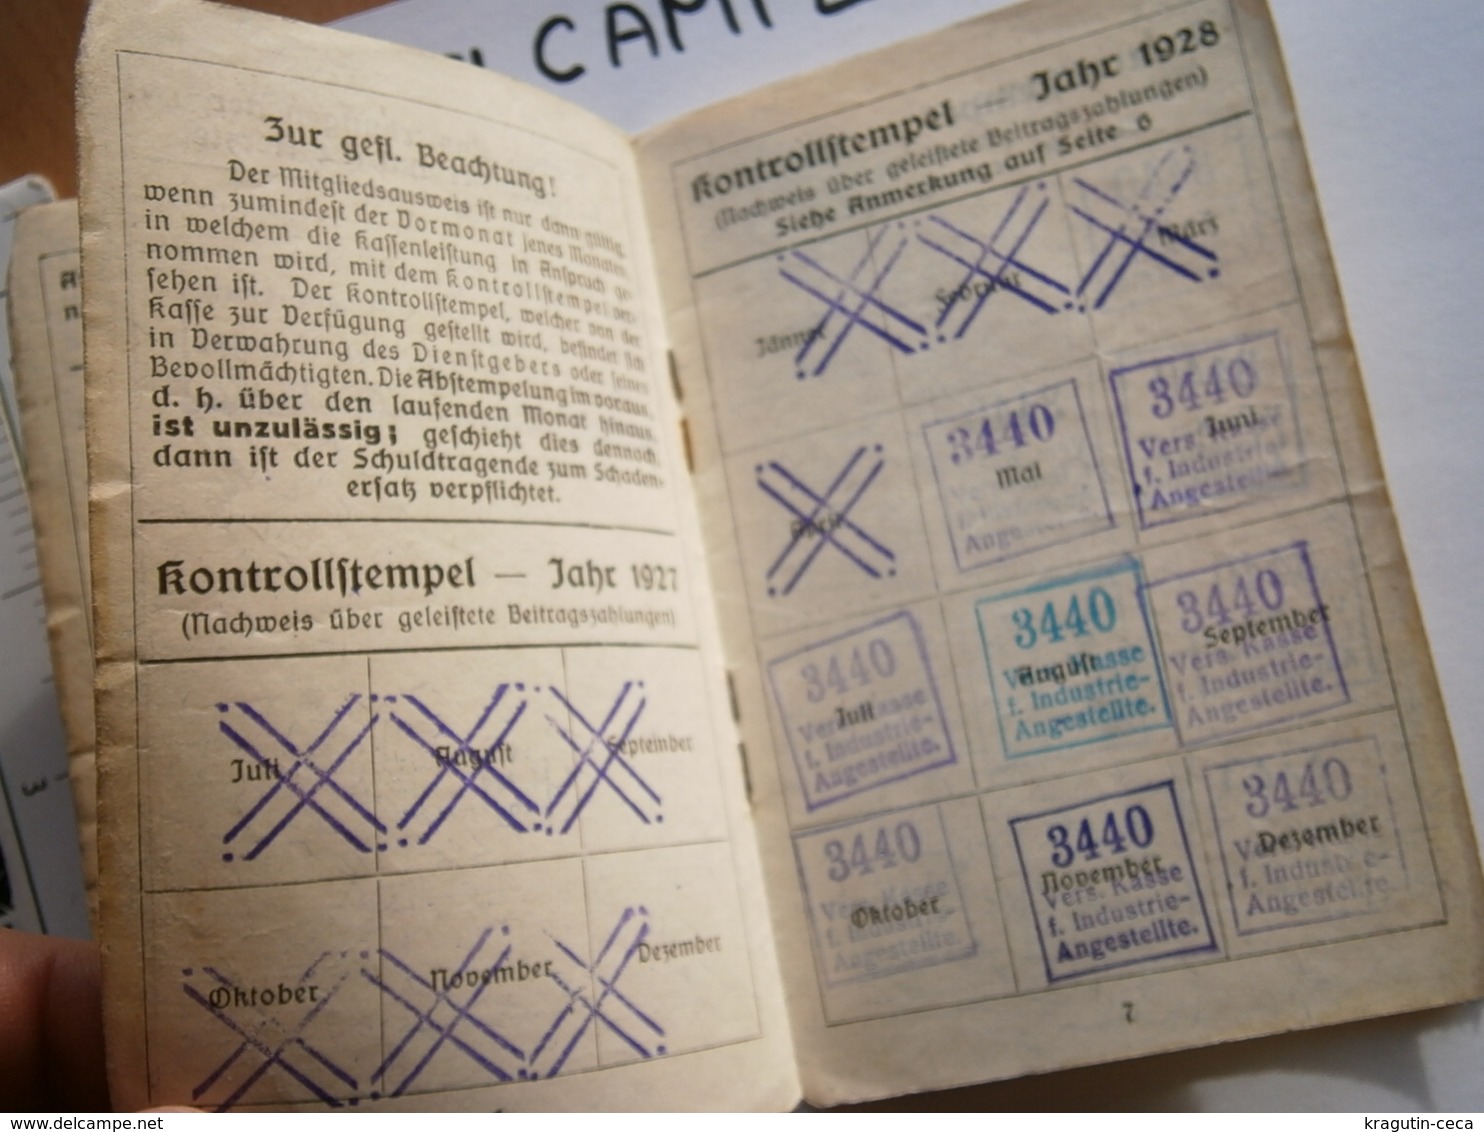 1930 WIEN OSTERREICH VIENNA AUSTRIA Mitgliedsausweis MEMBER CARD AUSWEIS EMPLOYEES DOCUMENT INSURANCE VERSICHERUNGSKARTE - Membership Cards